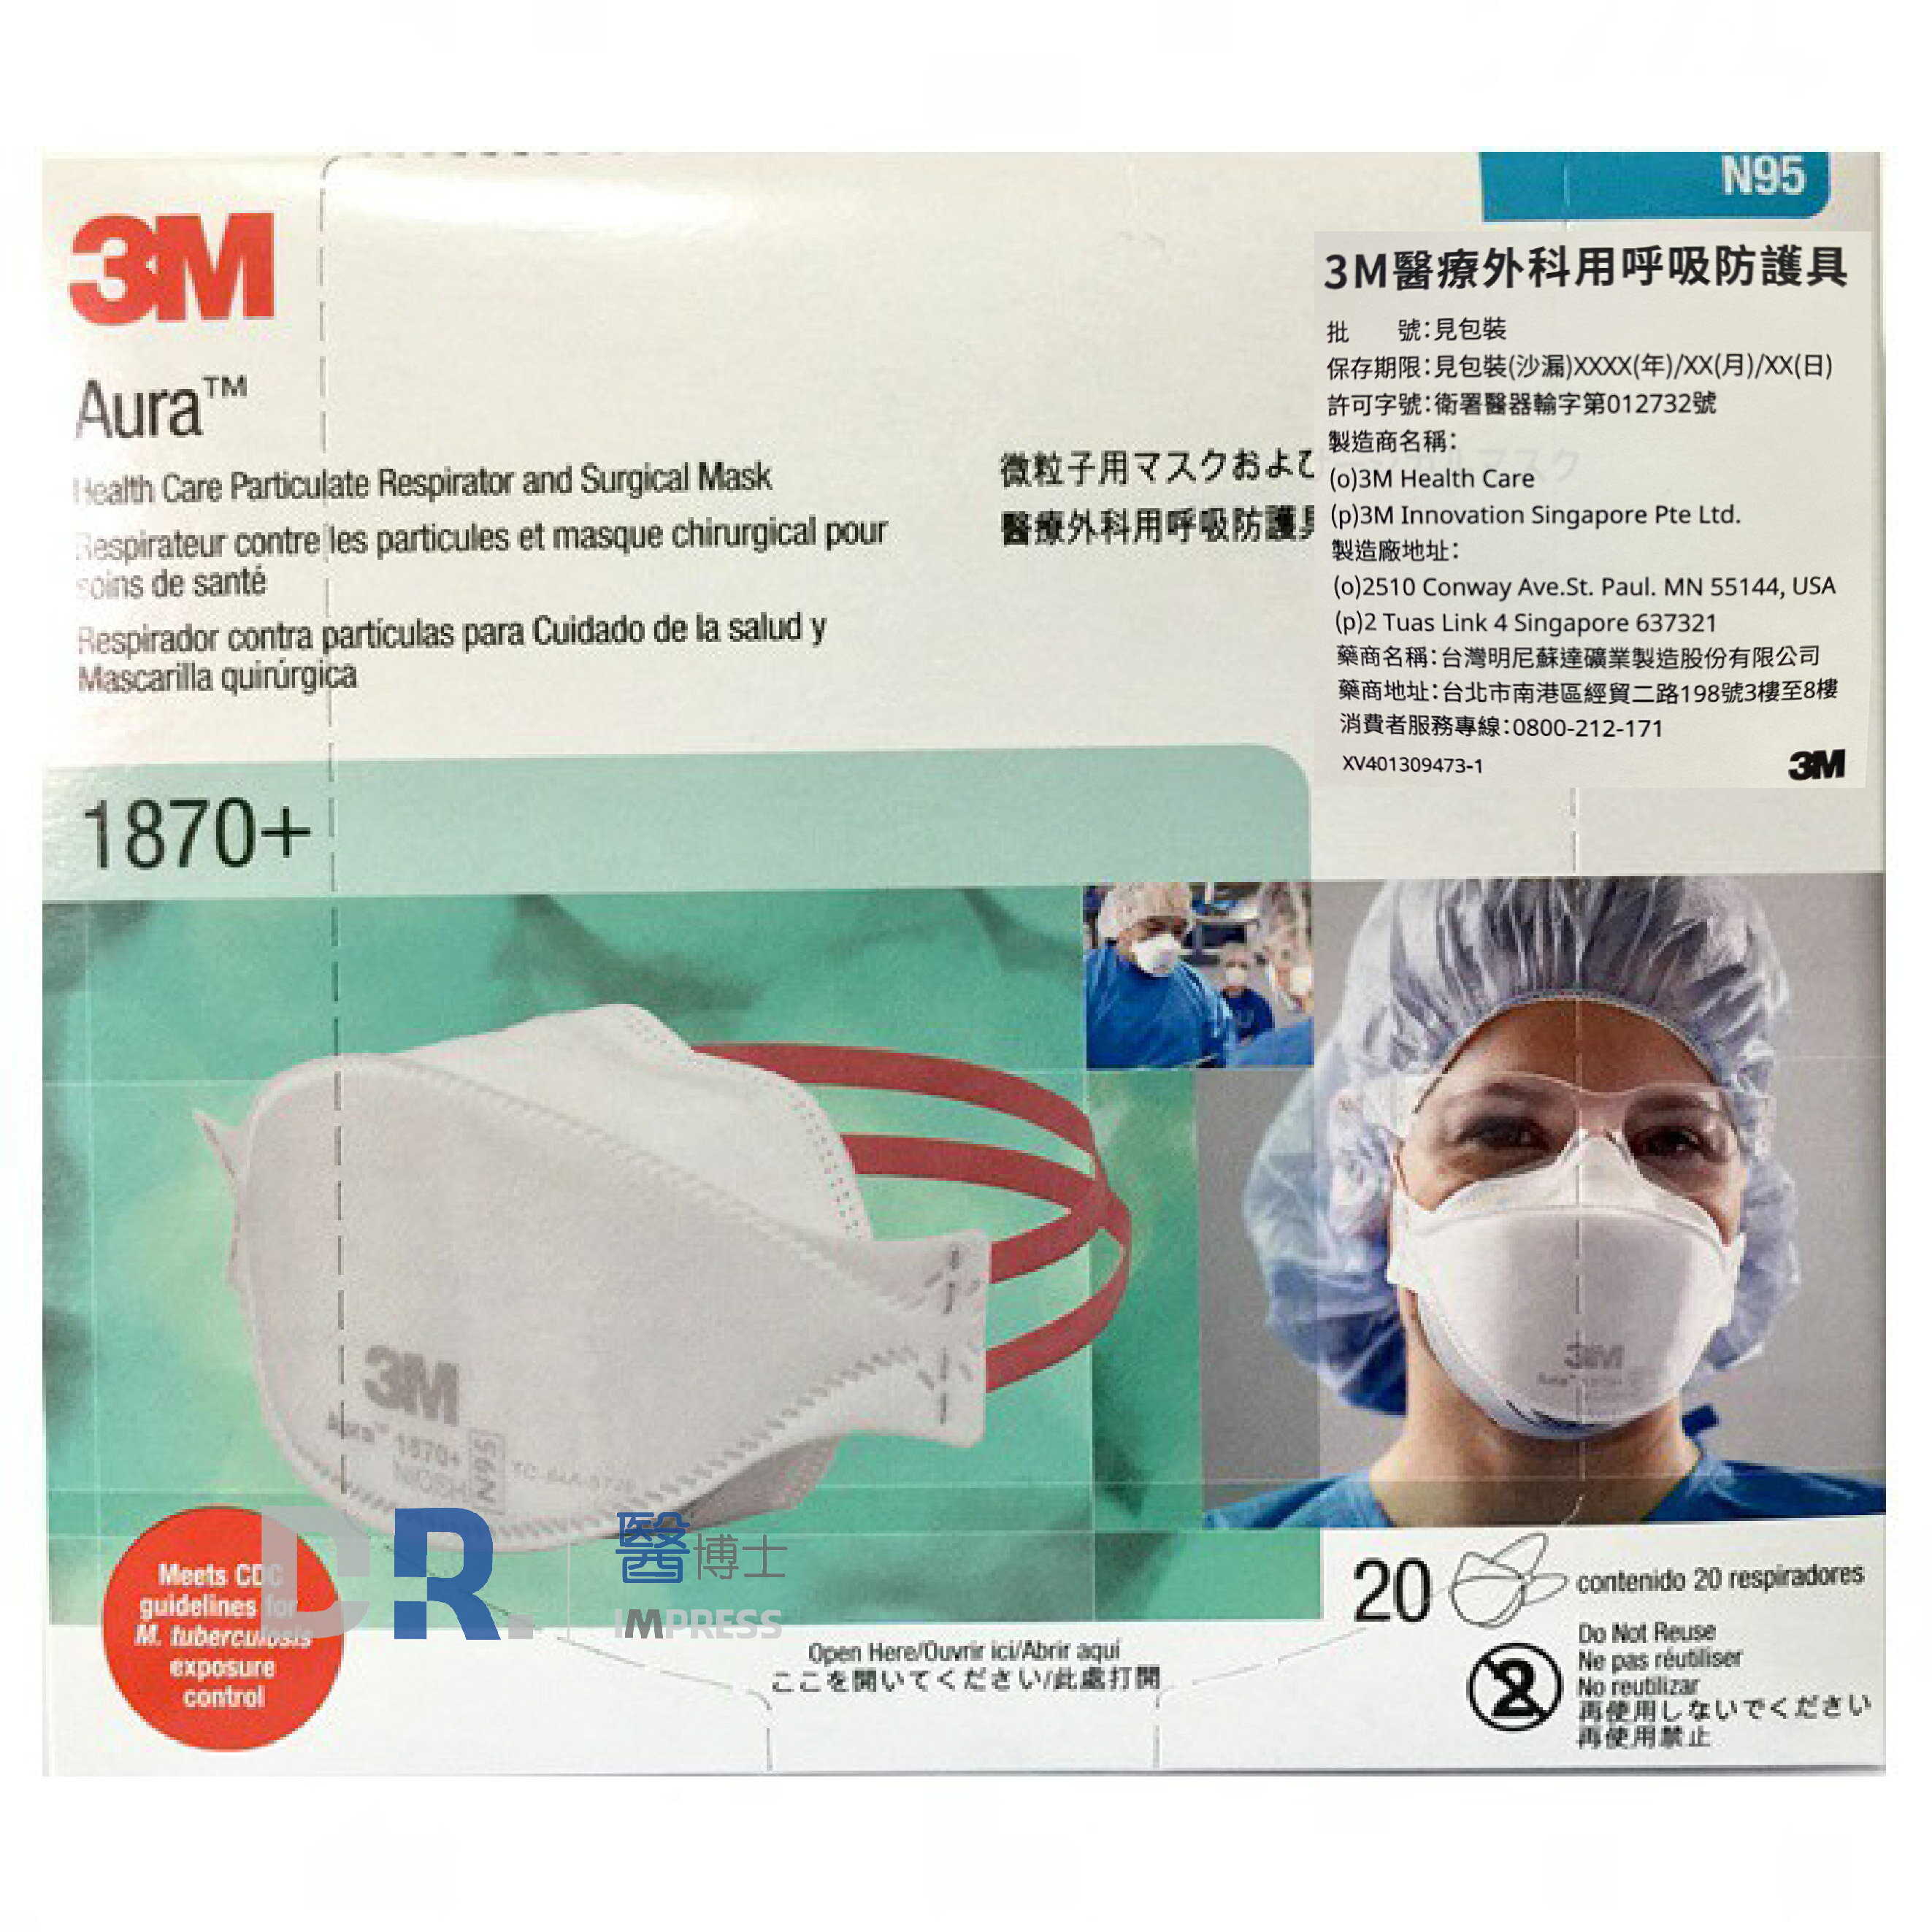 【醫博士】3M Aura 1870+ 醫療外科用呼吸防護具 N95口罩 盒裝(20片)